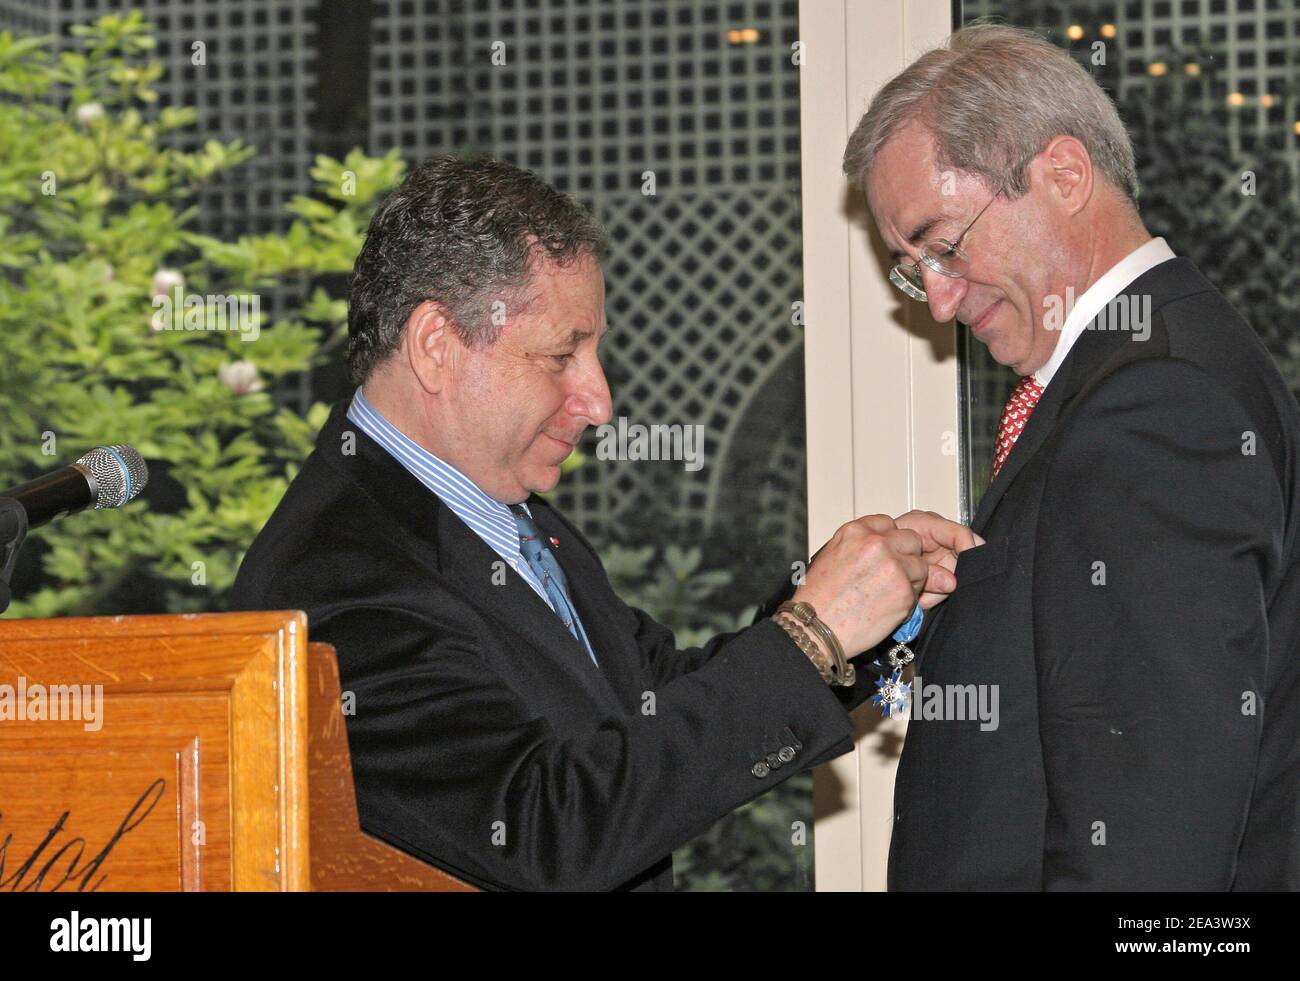 Jean Todt, directeur de l'équipe Ferrari, remet à Jean-Louis Souman,  directeur de l'hôtel Bristol la médaille de l'officier à l'ordre National  du merite à Paris, France, le 16 avril 2005. Photo de